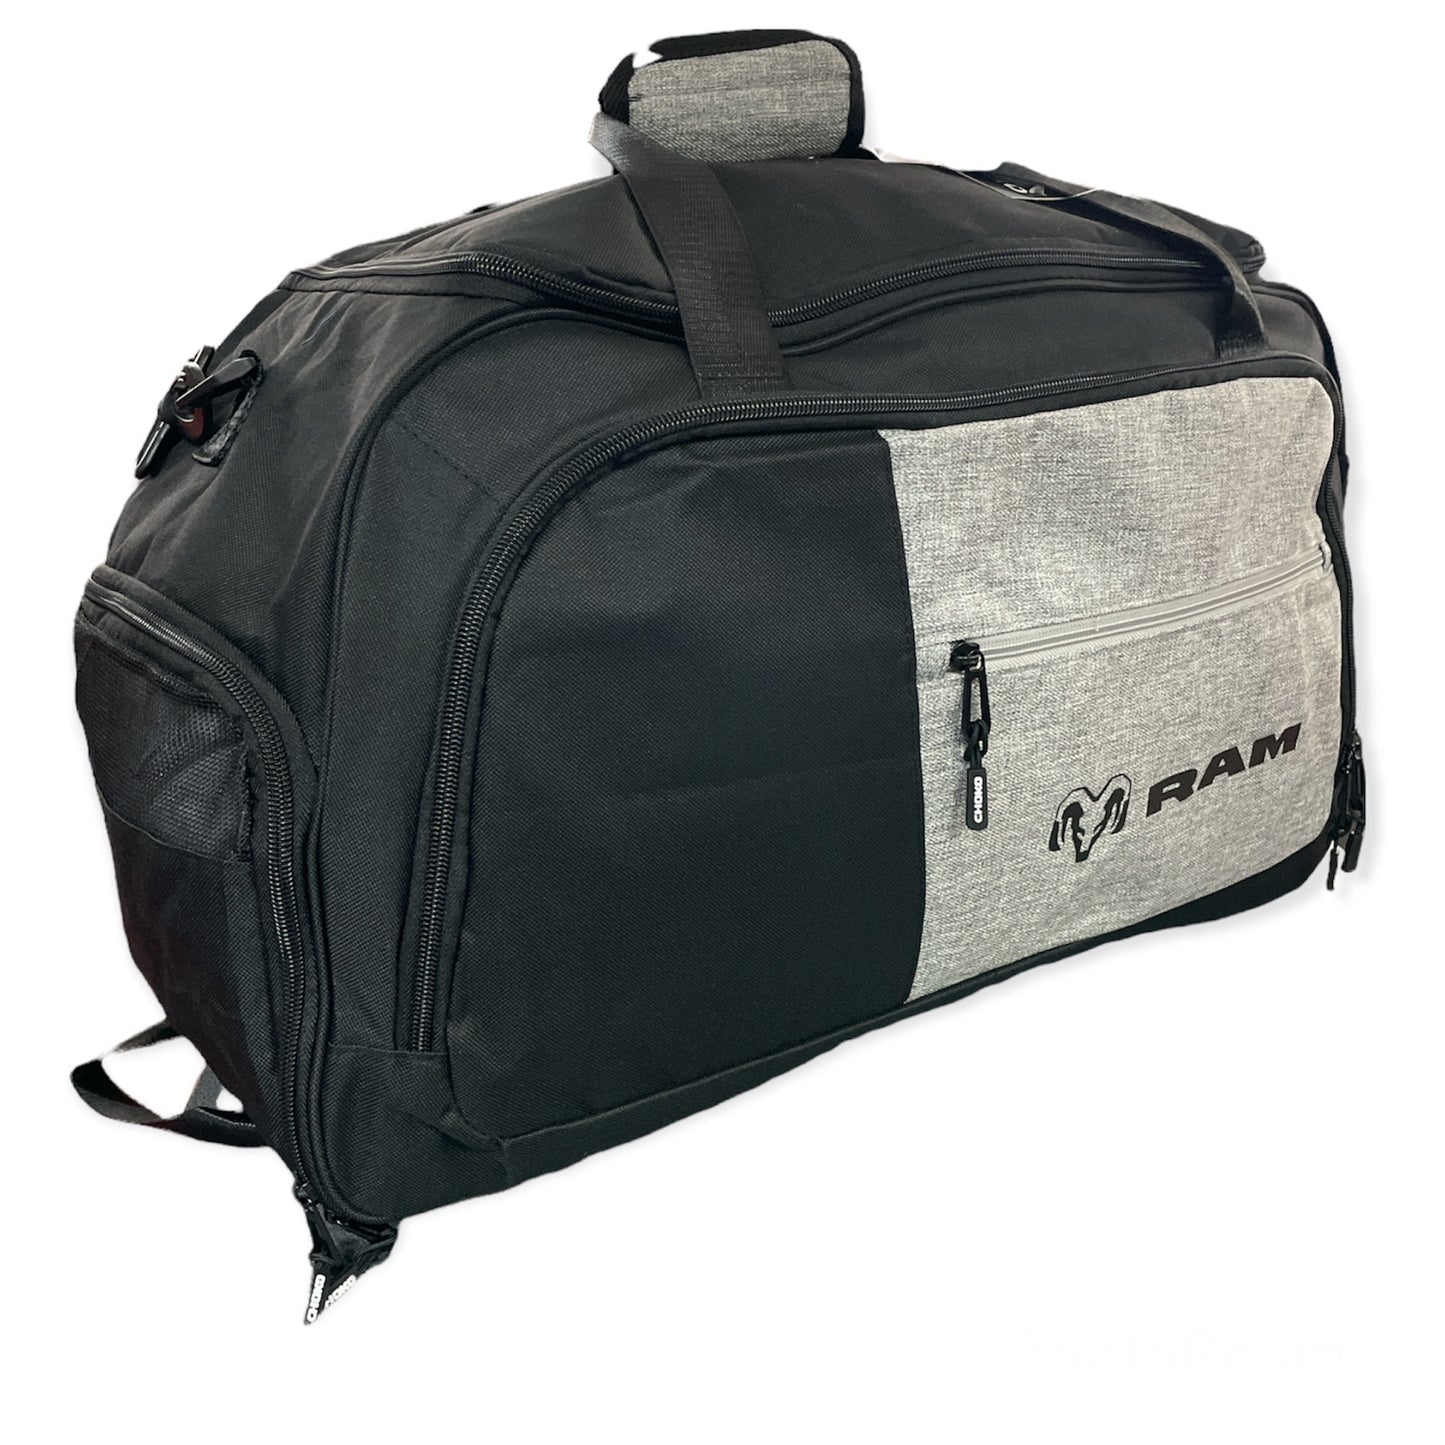 Dodge RAM Reisetasche Sporttasche Duffel Bag mit RAM Logo Schwarz/Grau